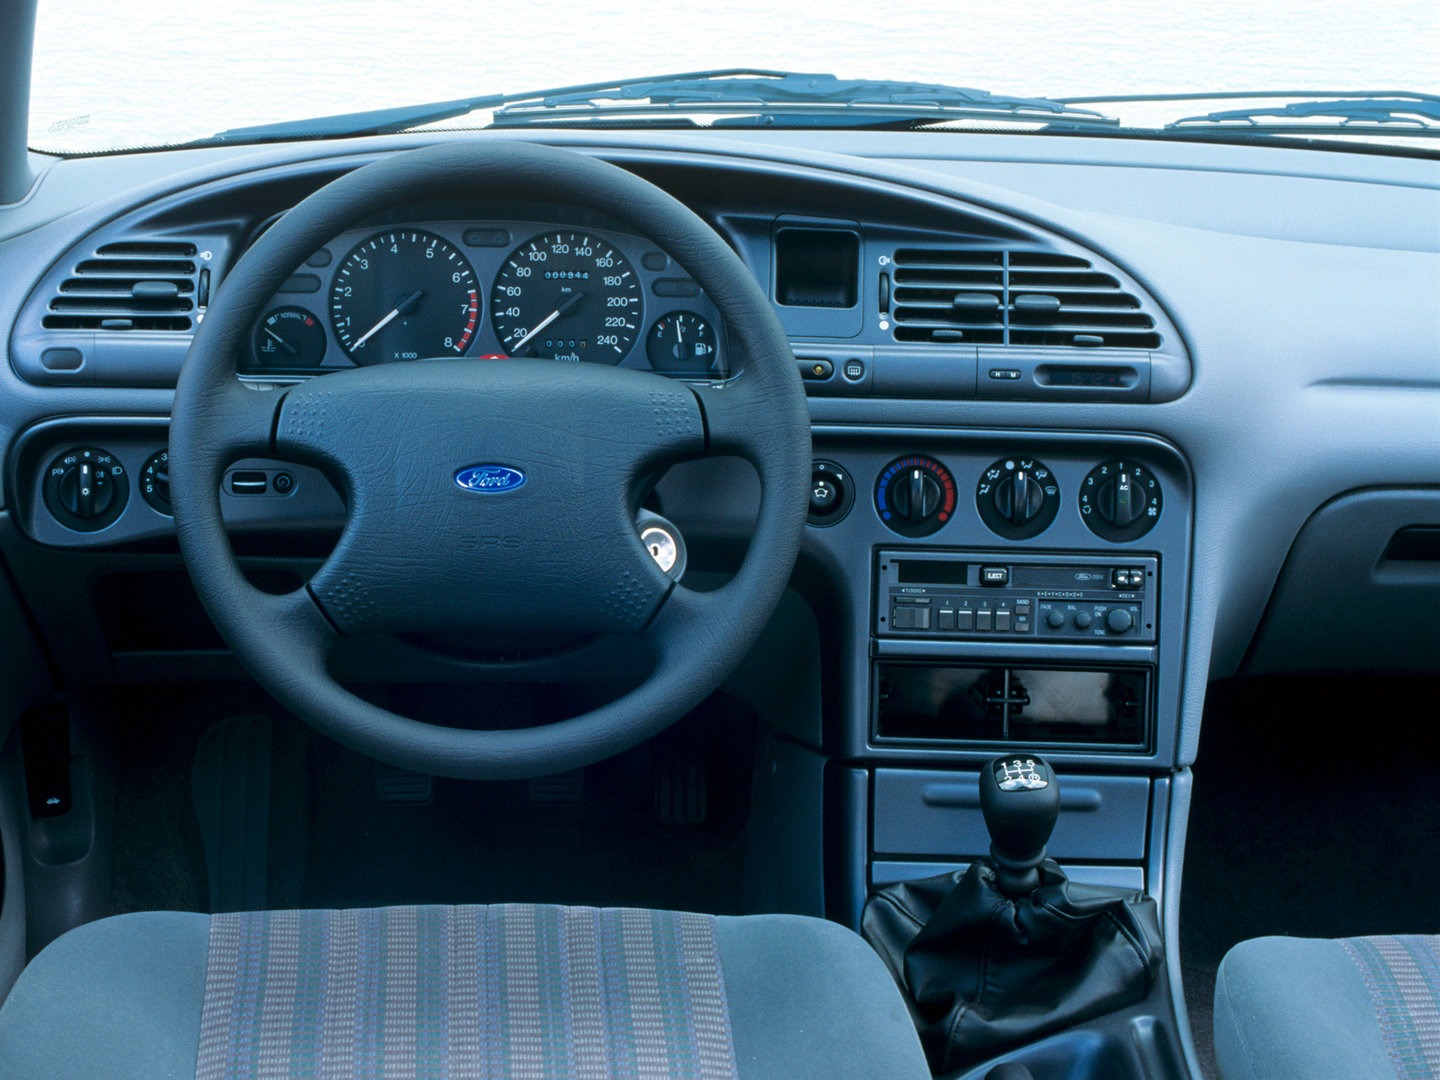 Ford Mondeo CLX interior